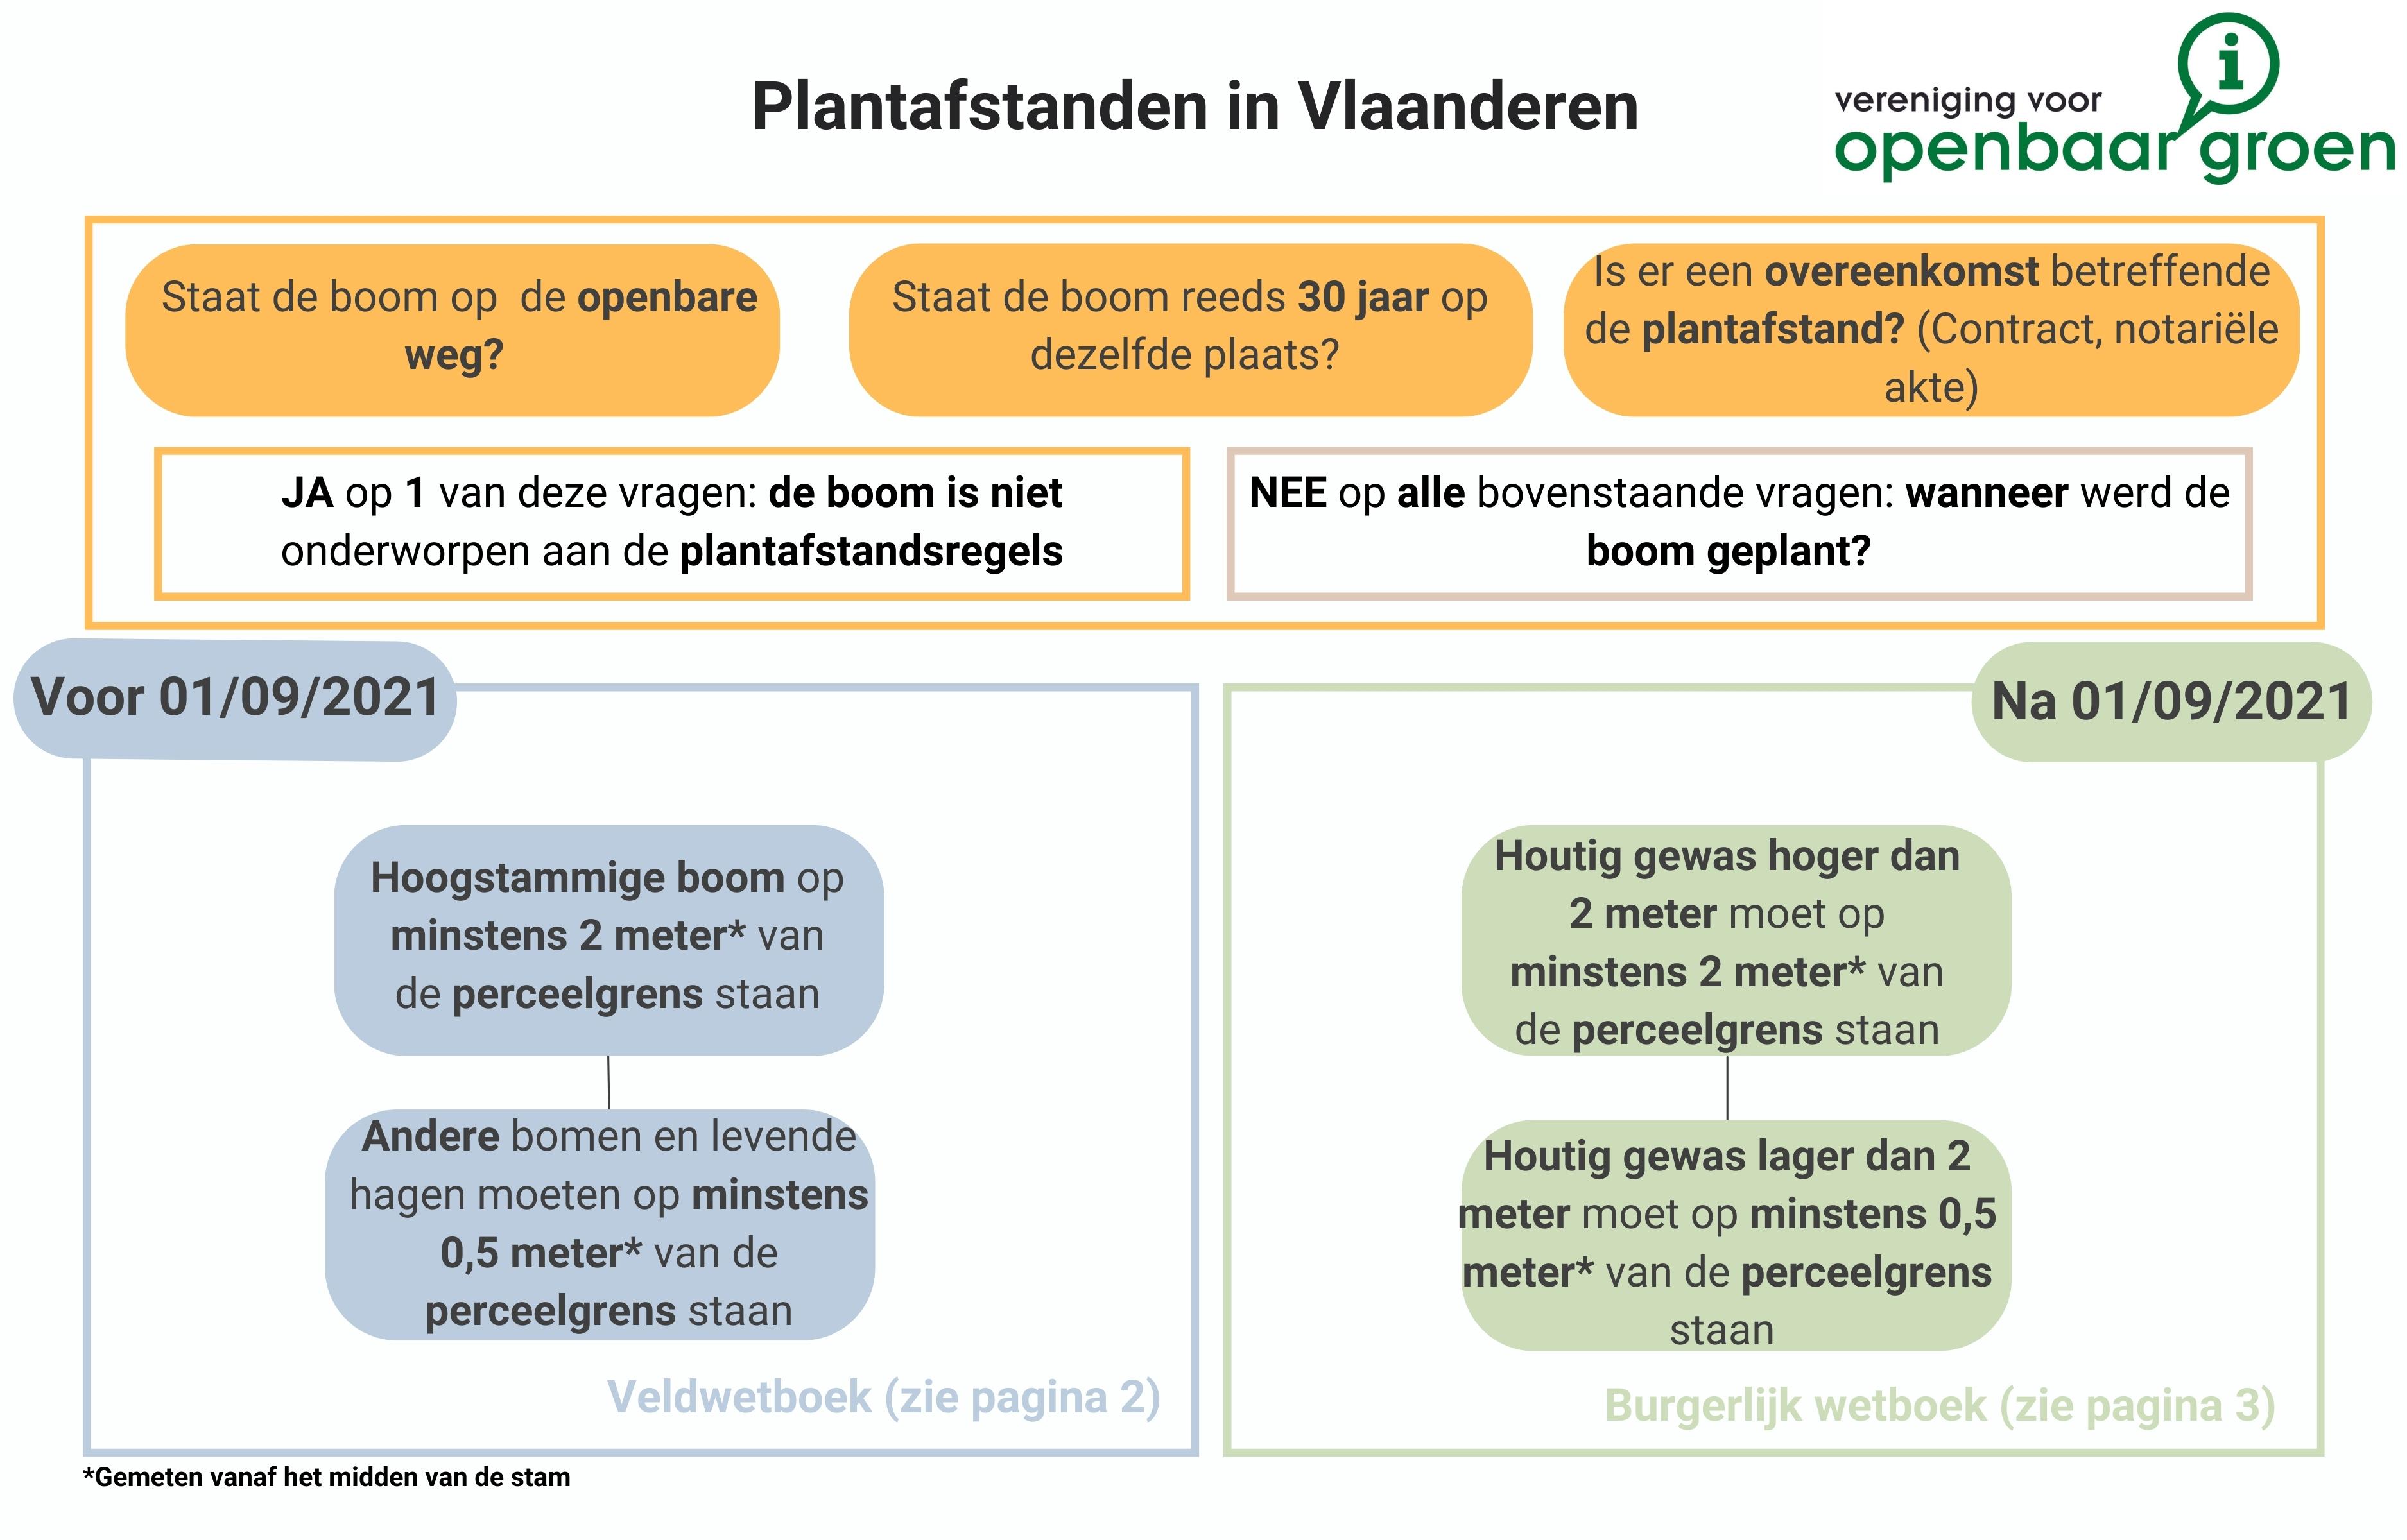 Plantafstanden in Vlaanderen: overzicht